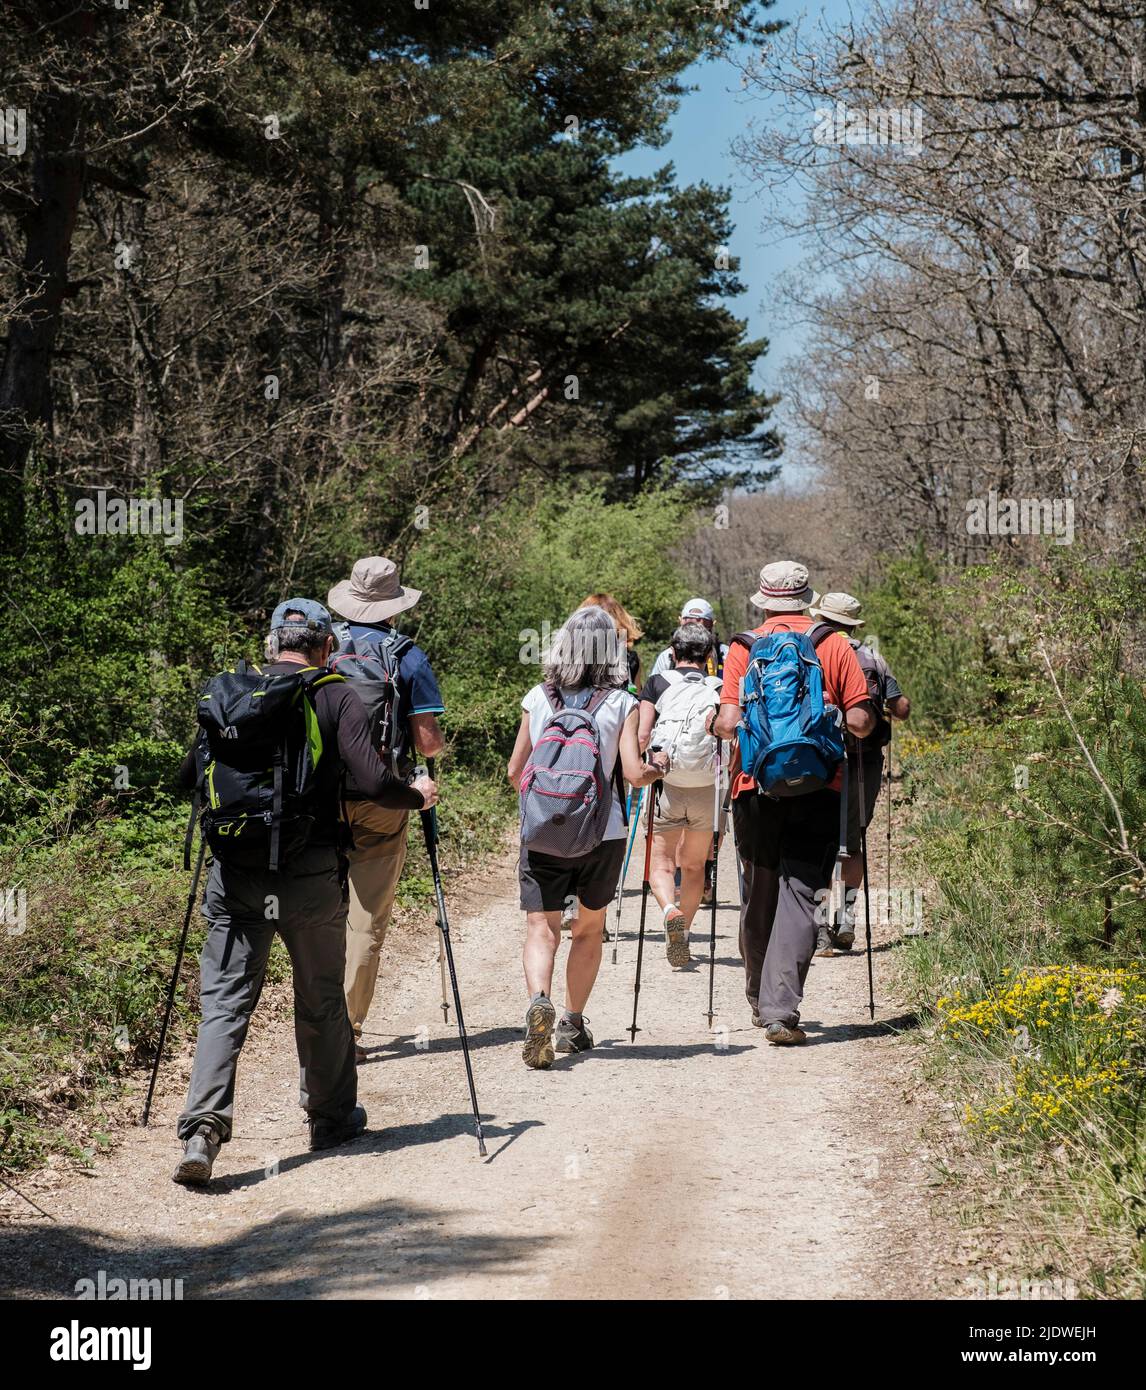 Spagna, Camino de Santiago. Escursionisti sul Camino nei Monti Oca in rotta per San Juan de Ortega. Foto Stock